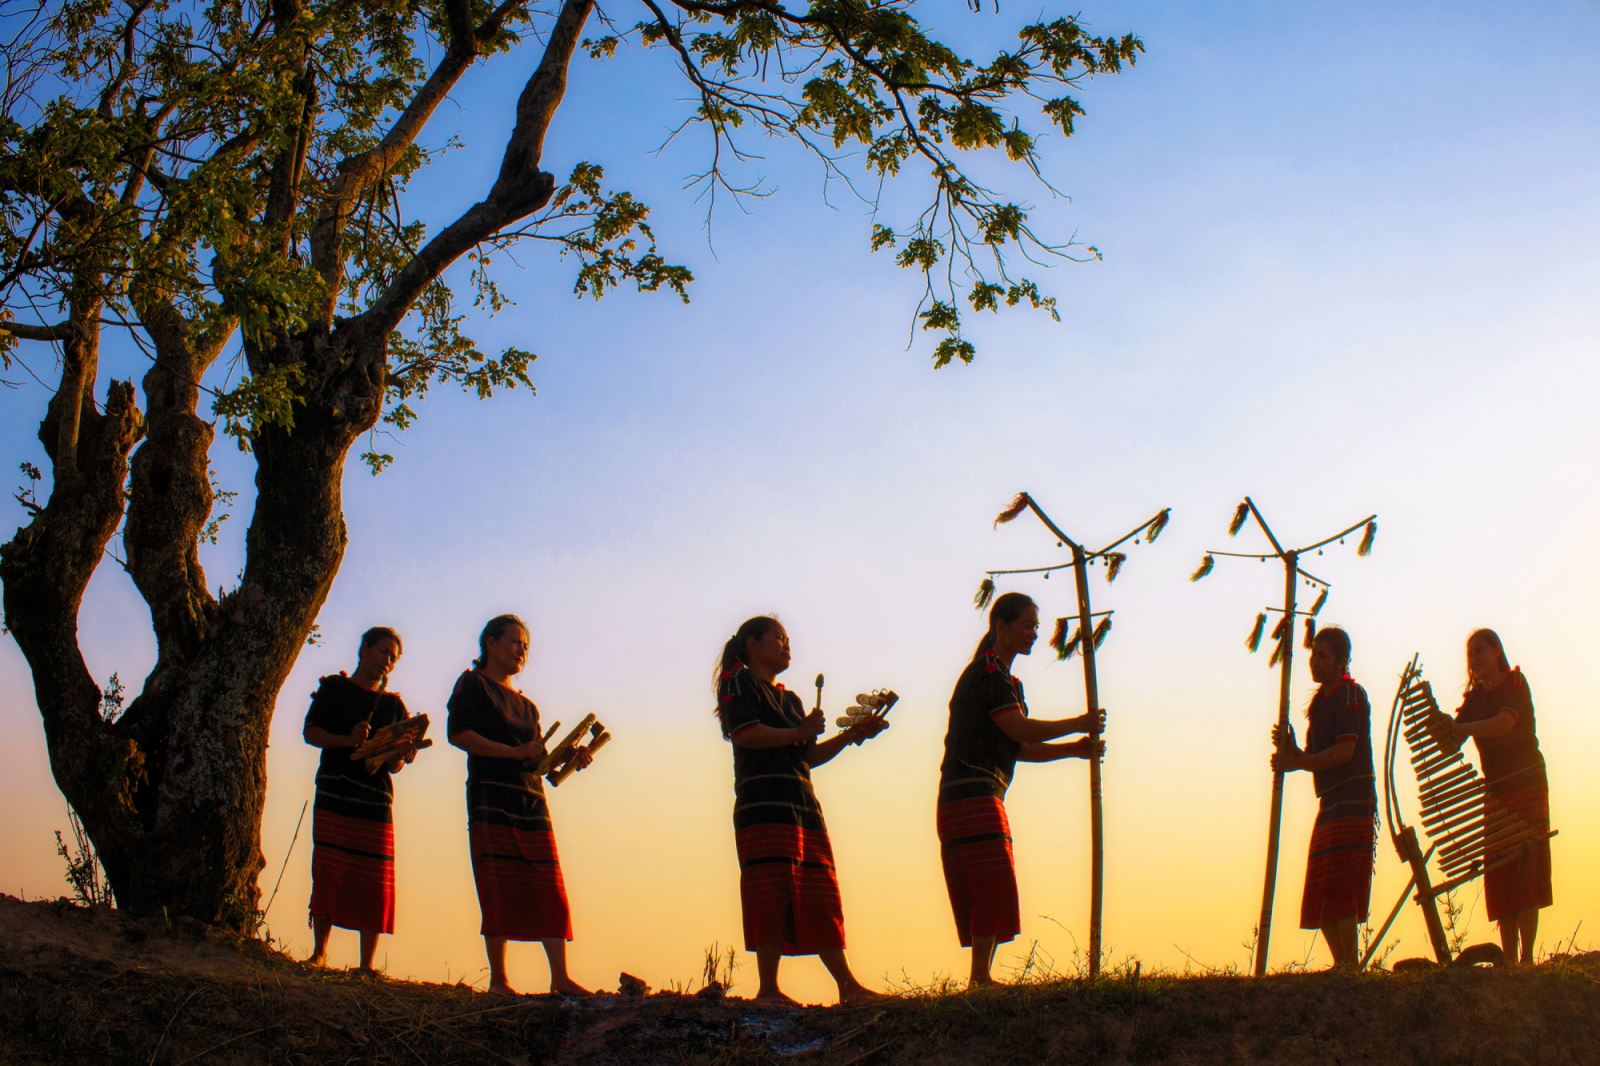 Phụ nữ M’Nông biểu diễn đàn T’rưng và những nhạc cụ bằng tre nứa trong bộ gõ của nhạc cụ dân gian Tây Nguyên.